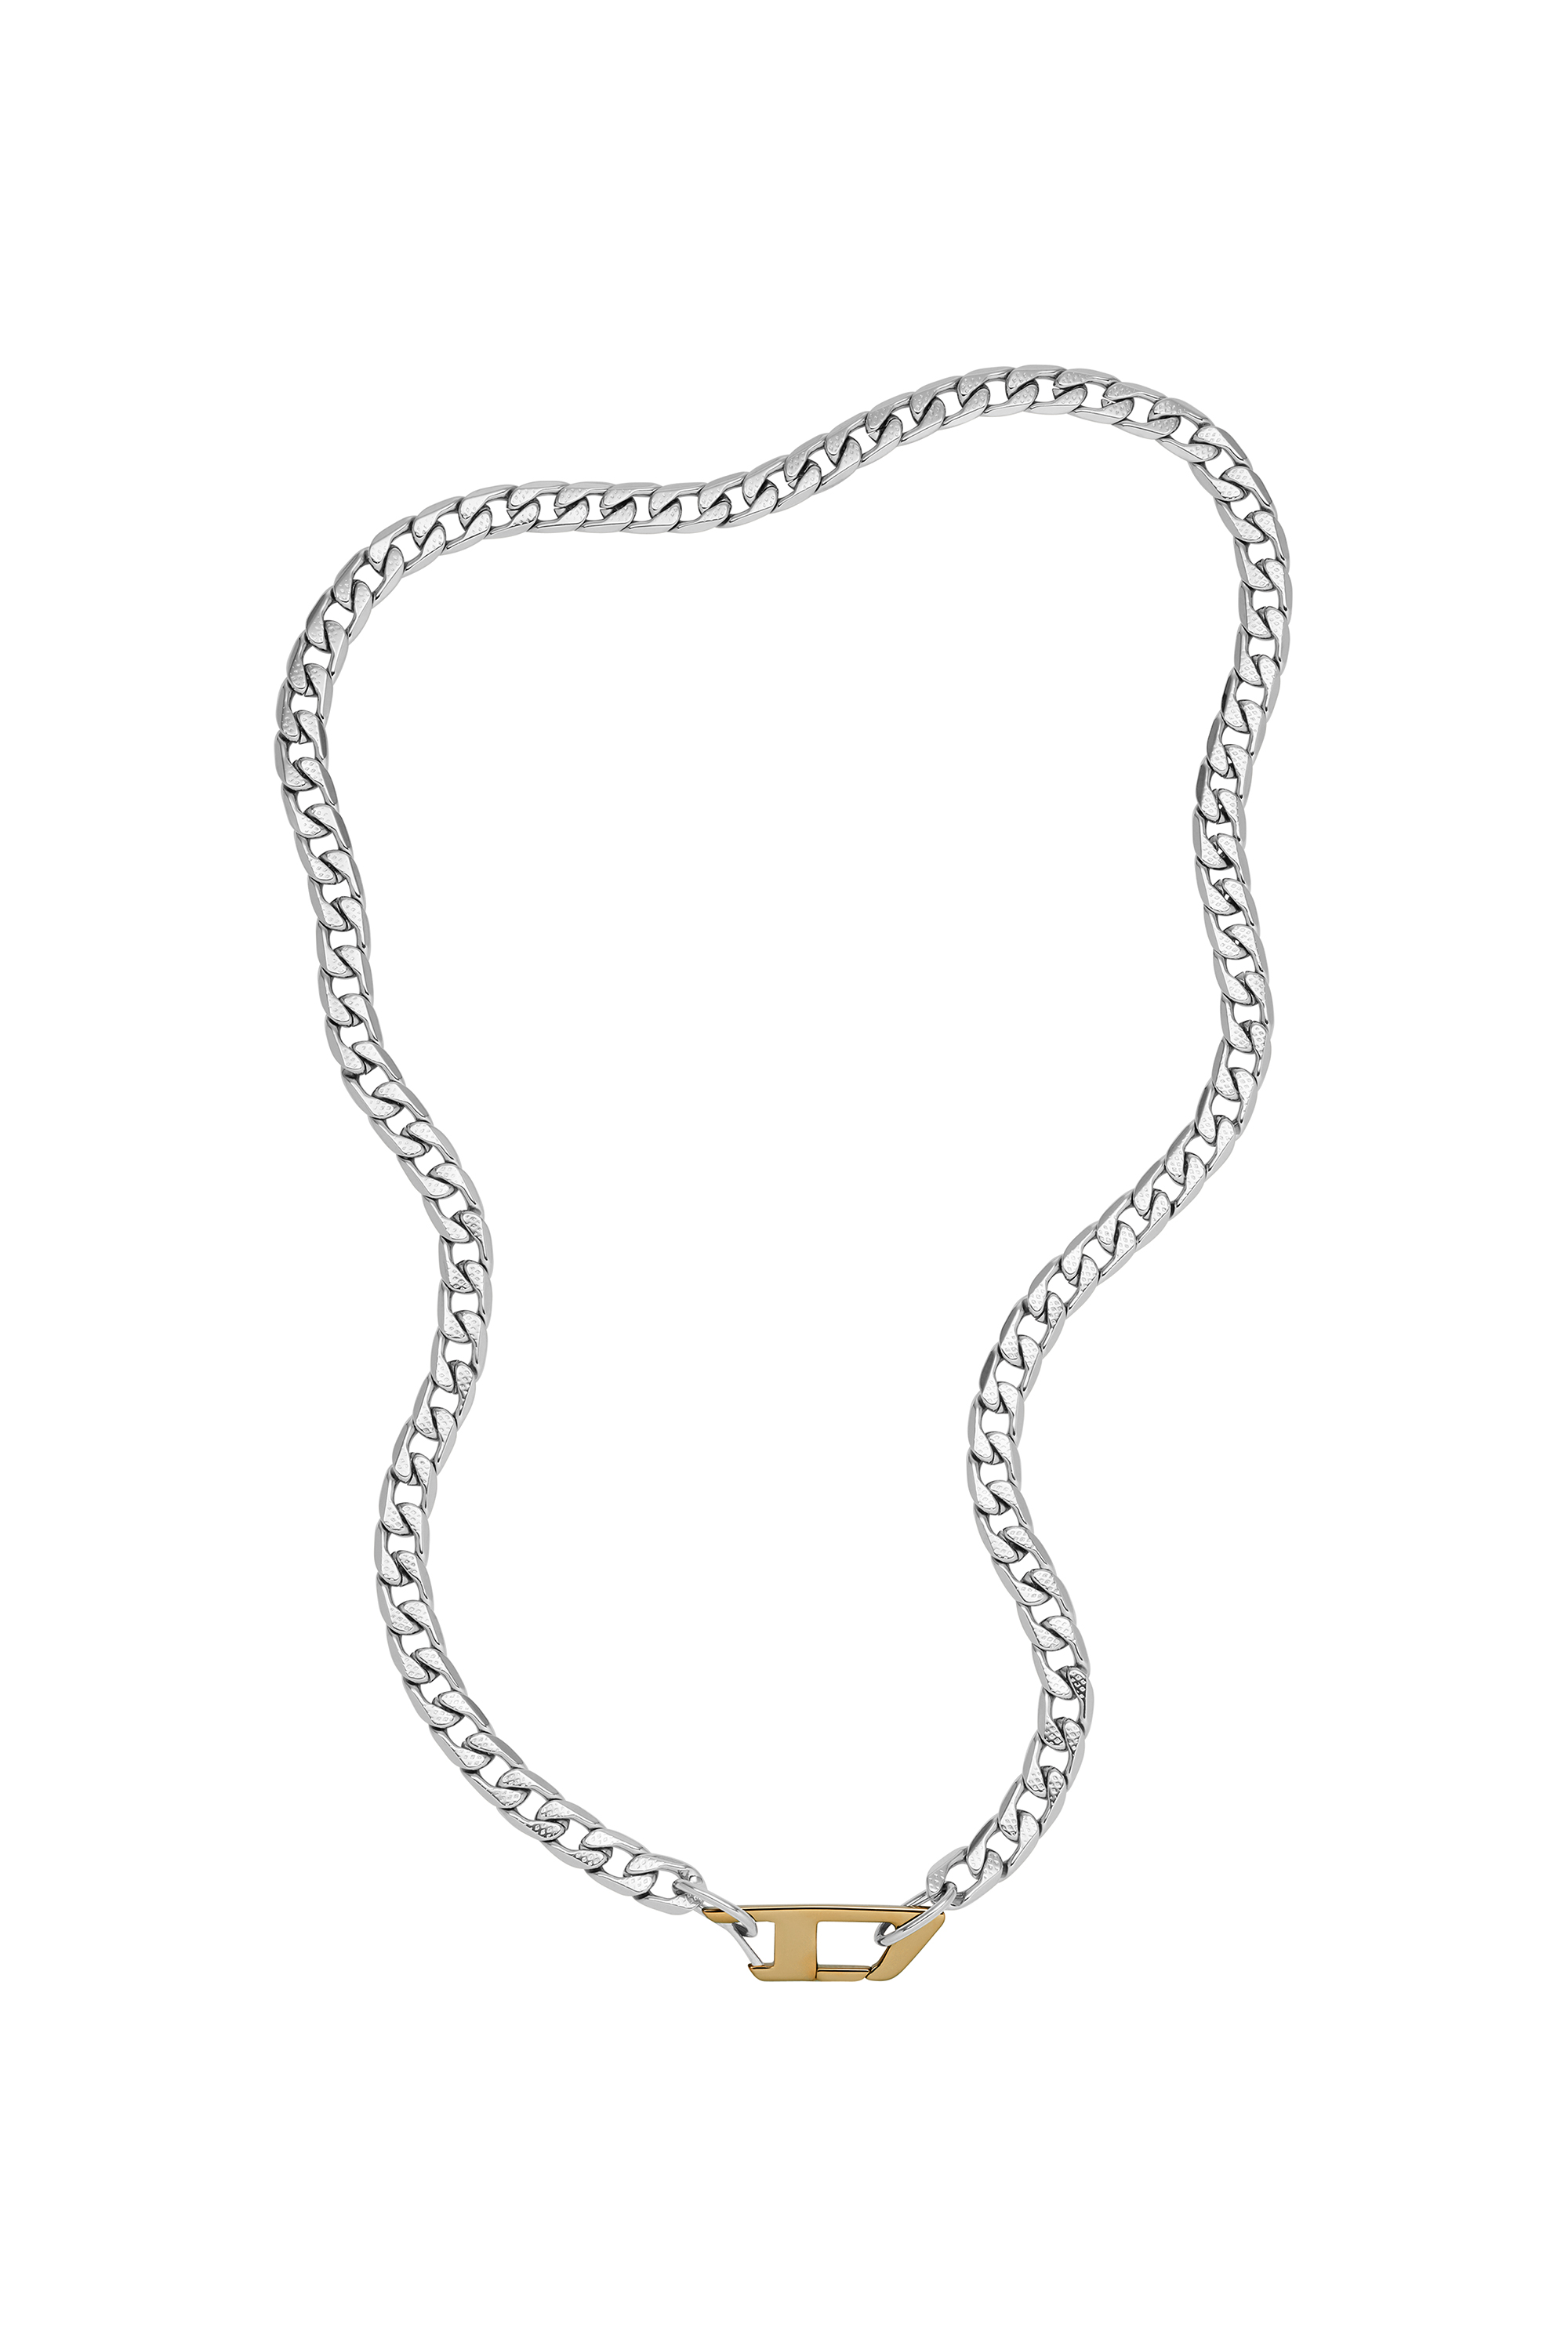 Halsketten für Männer: Edelstahl, Kette | Diesel®